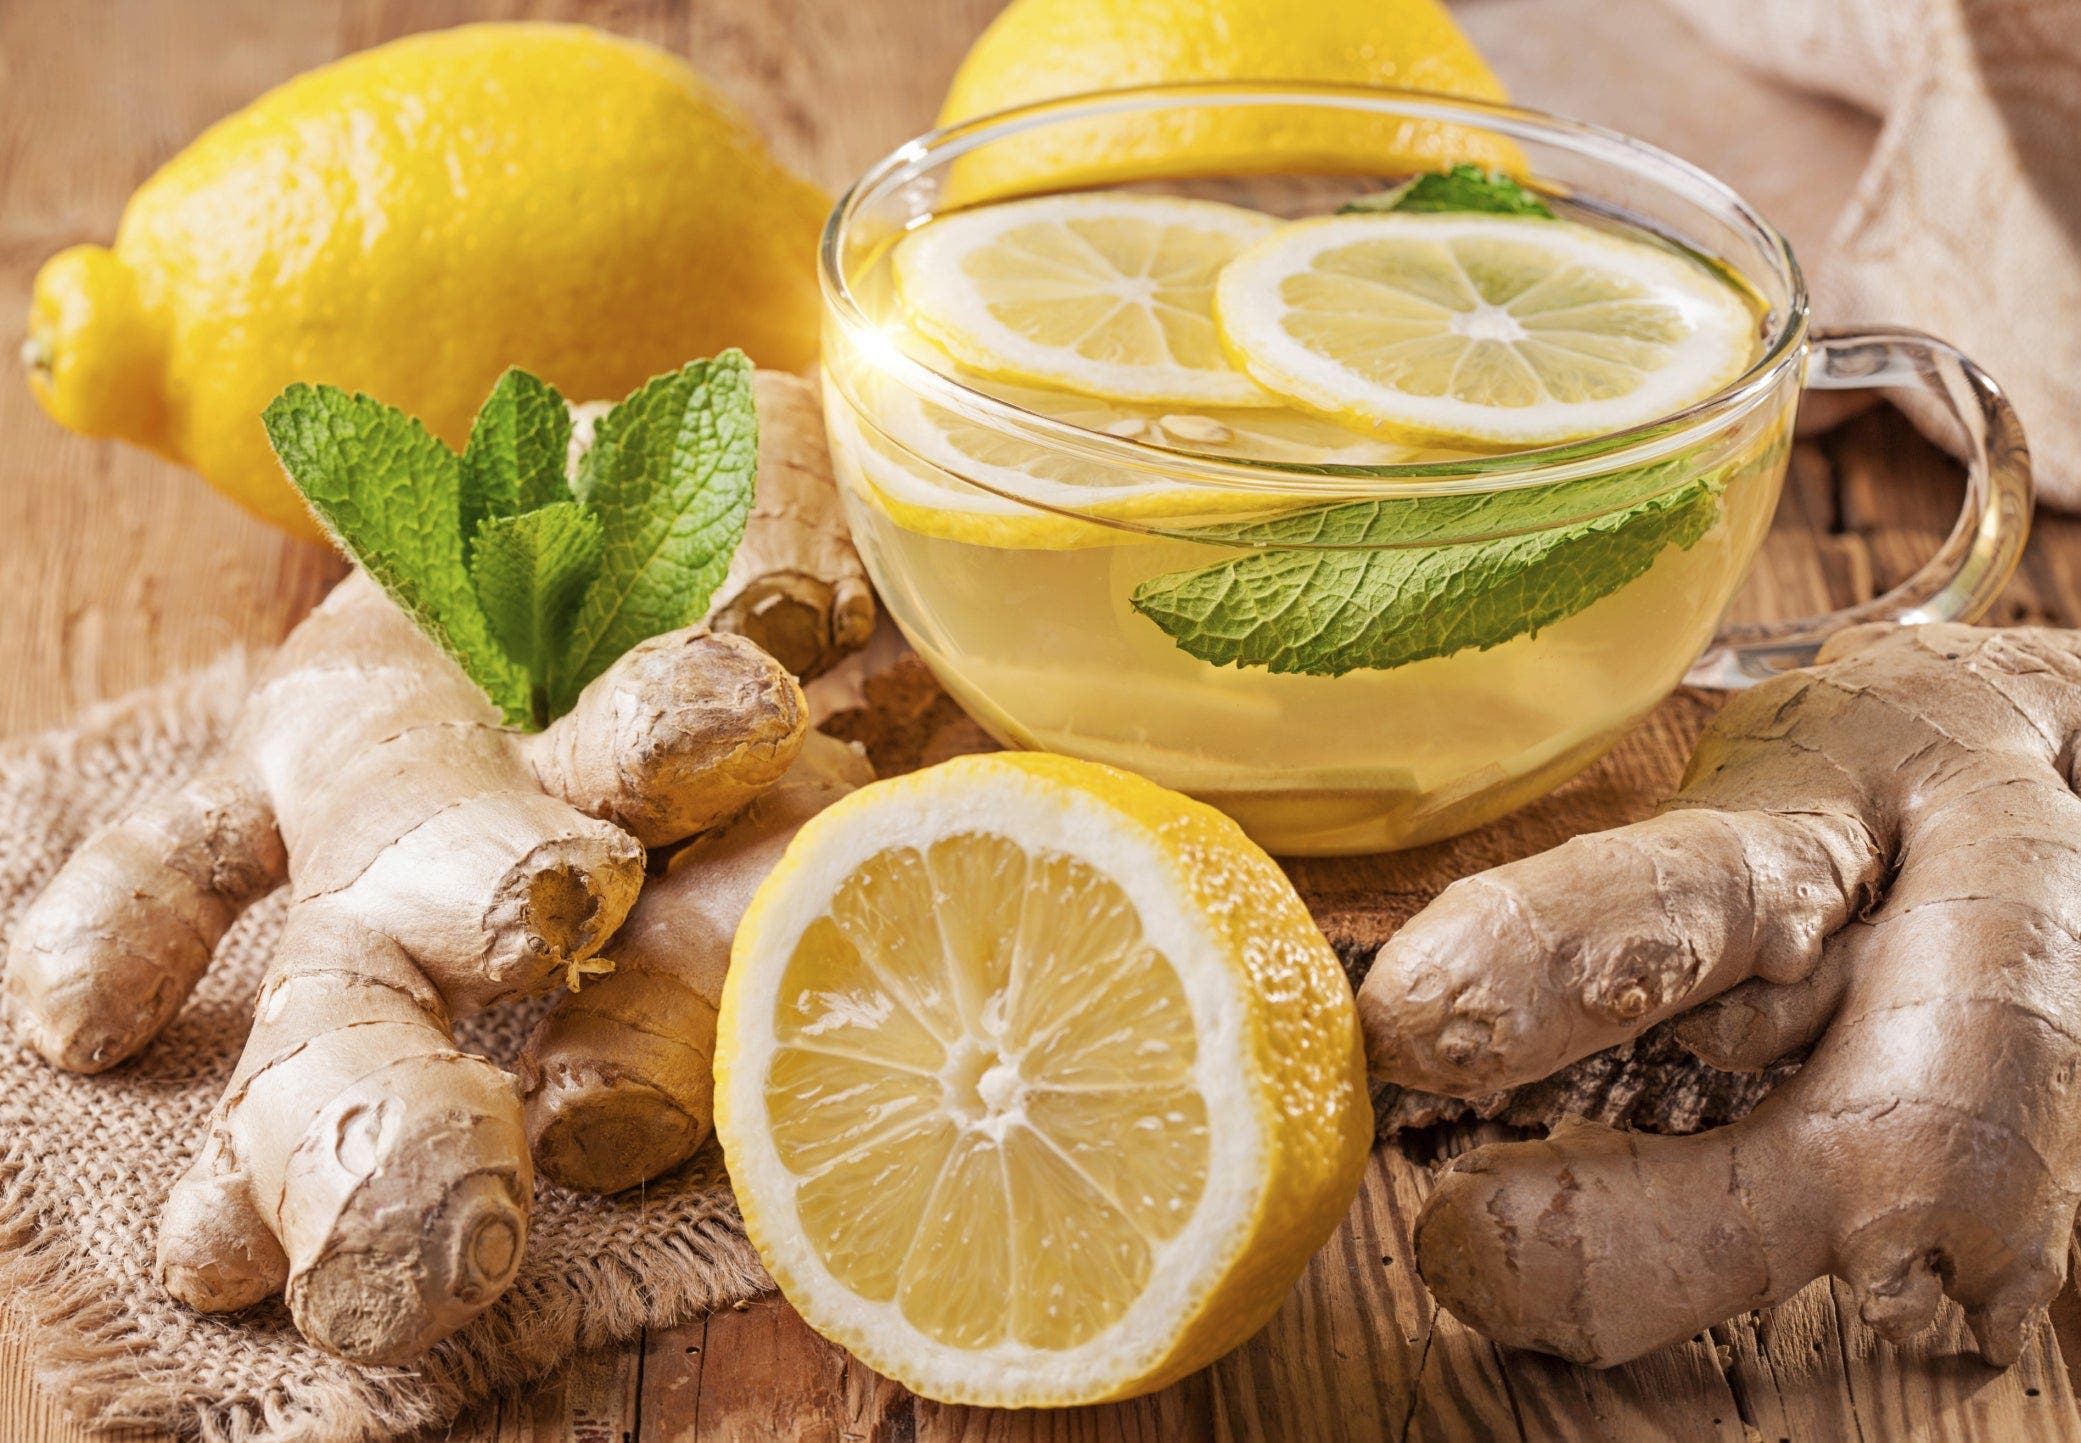 Un médecin affirme que le gingembre et le citron sont la recette parfaite pour perdre du poids